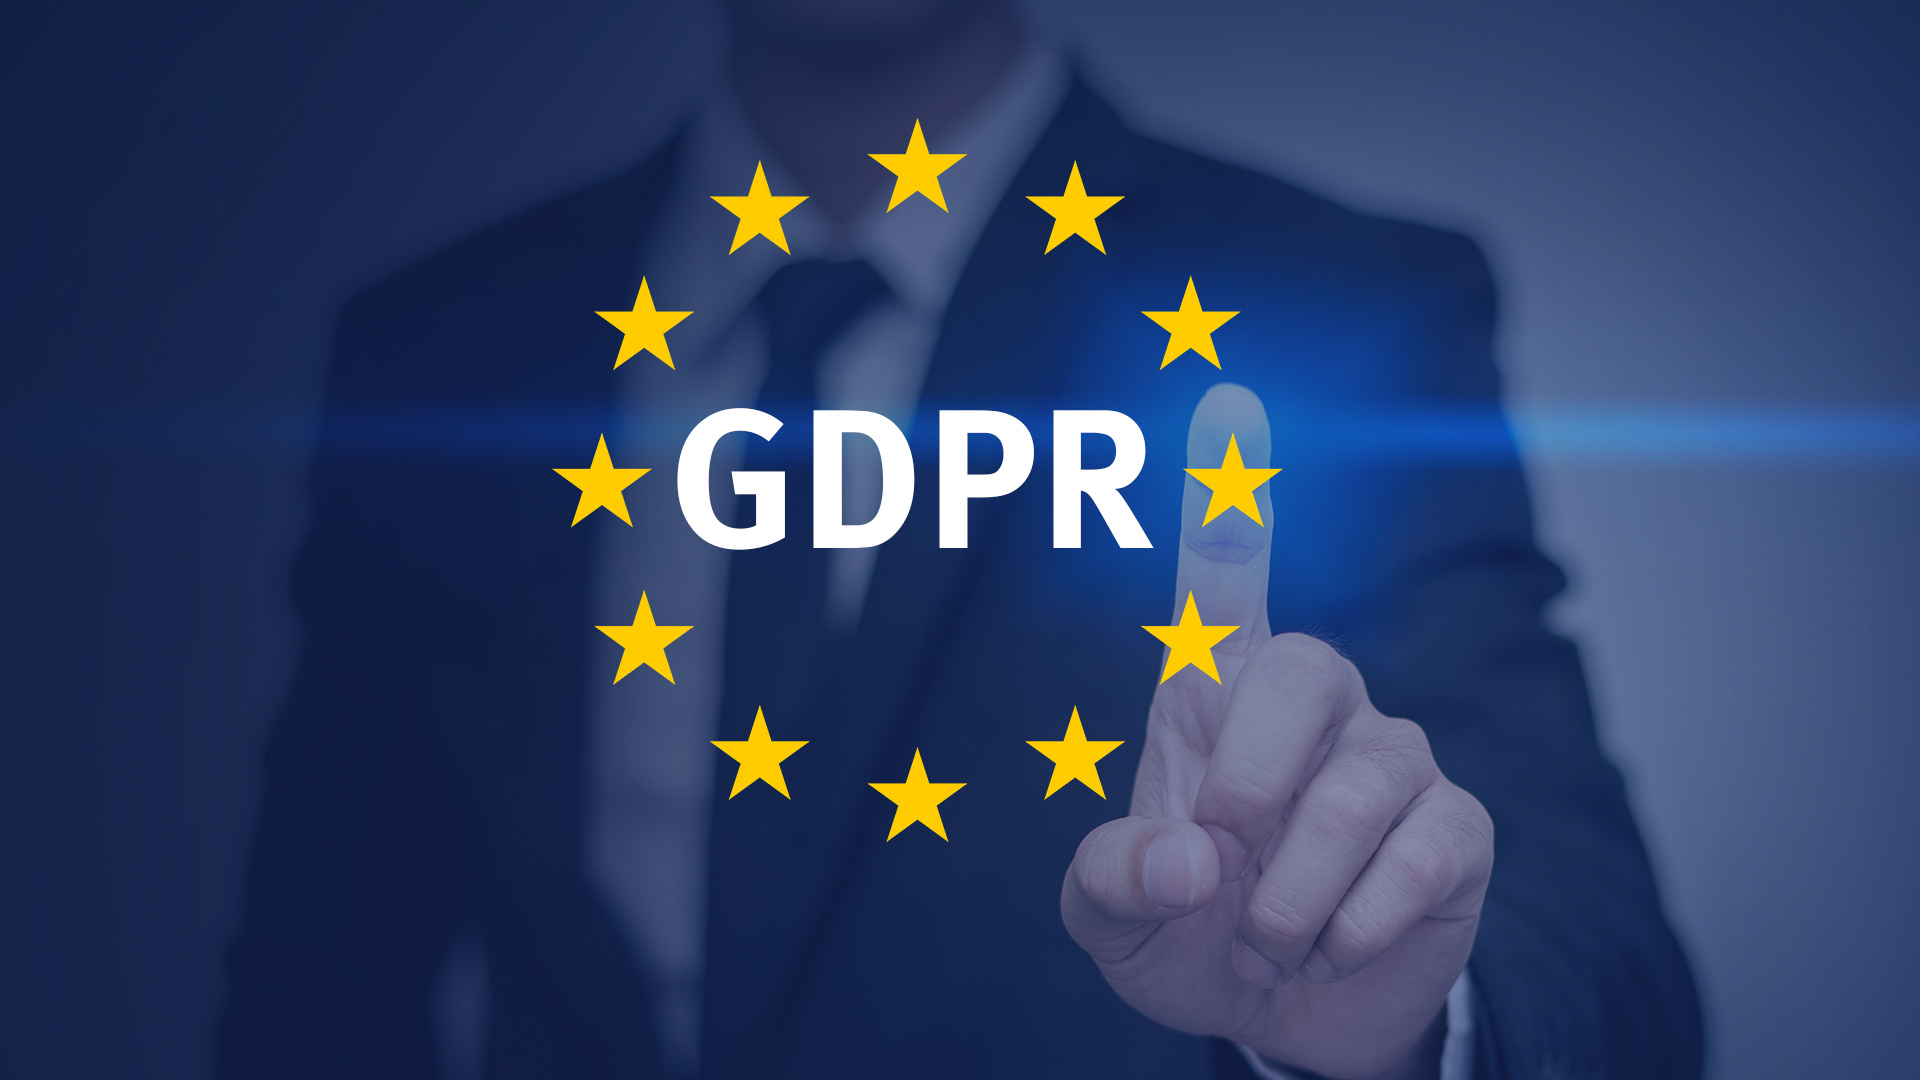 欧盟数据保护条例GDPR生效一年，科技行业发生了哪些变化？